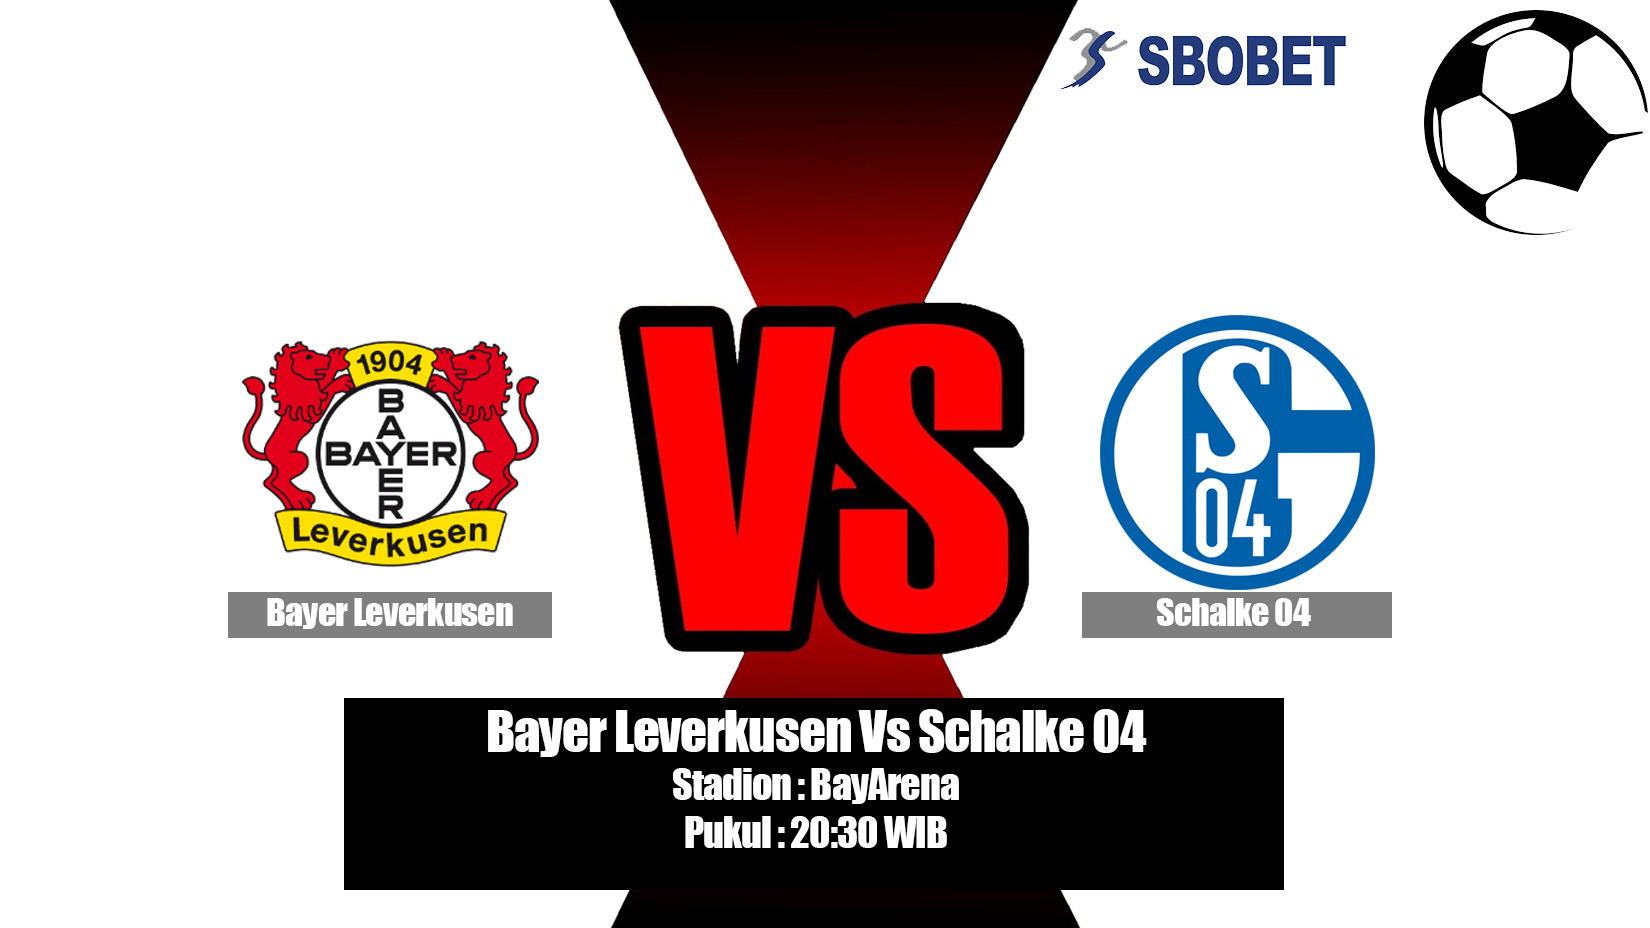 Prediksi Bola Bayer Leverkusen Vs Schalke 04 11 Mei 2019